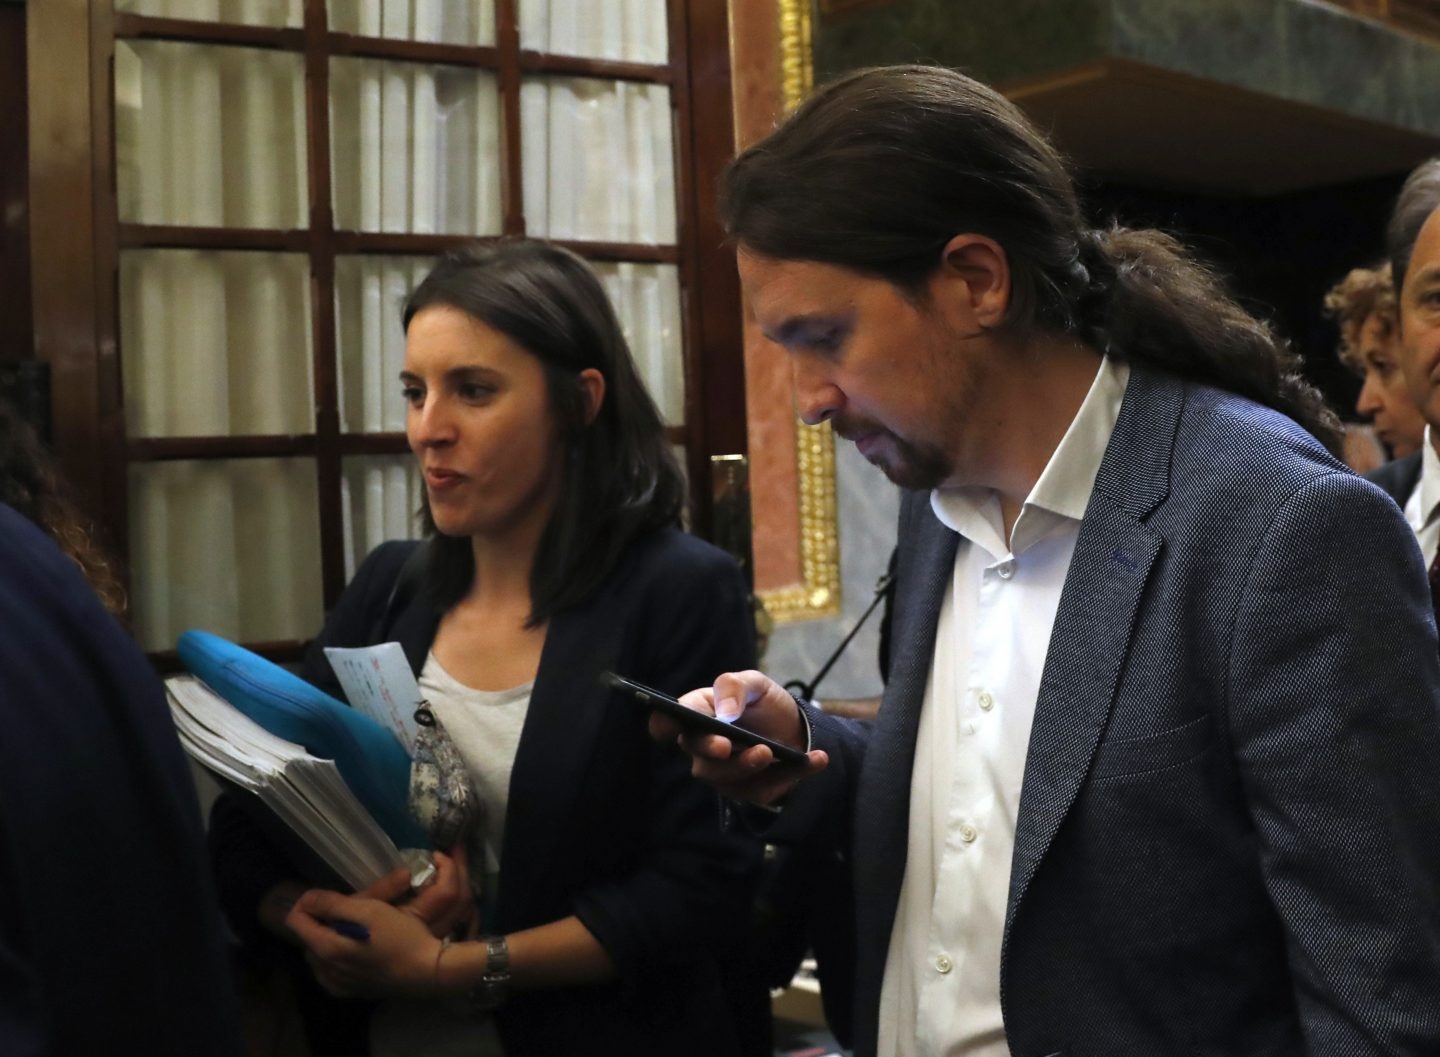 Irene Montero y Pablo Iglesias salen del hemiciclo en la moción de censura.